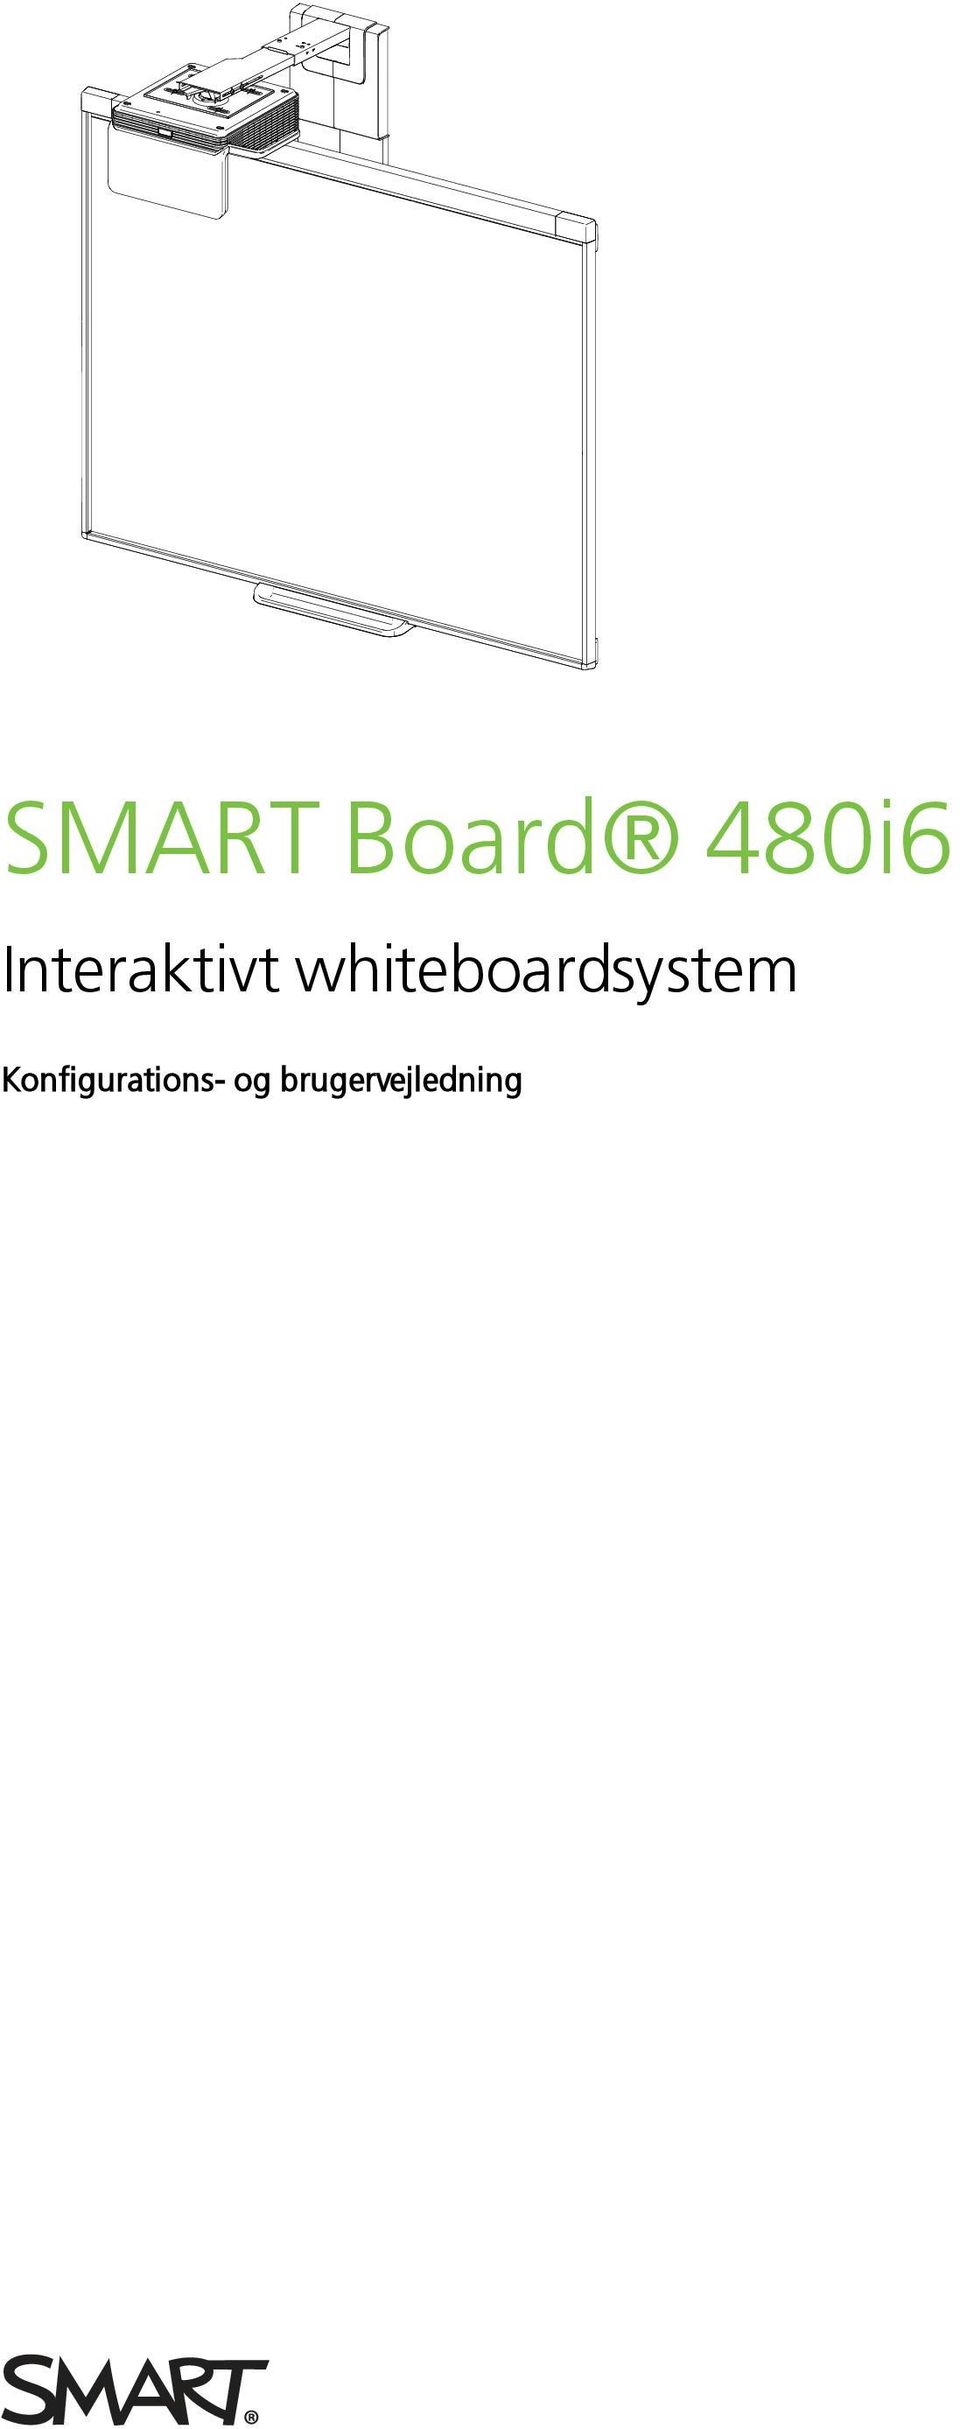 whiteboardsystem